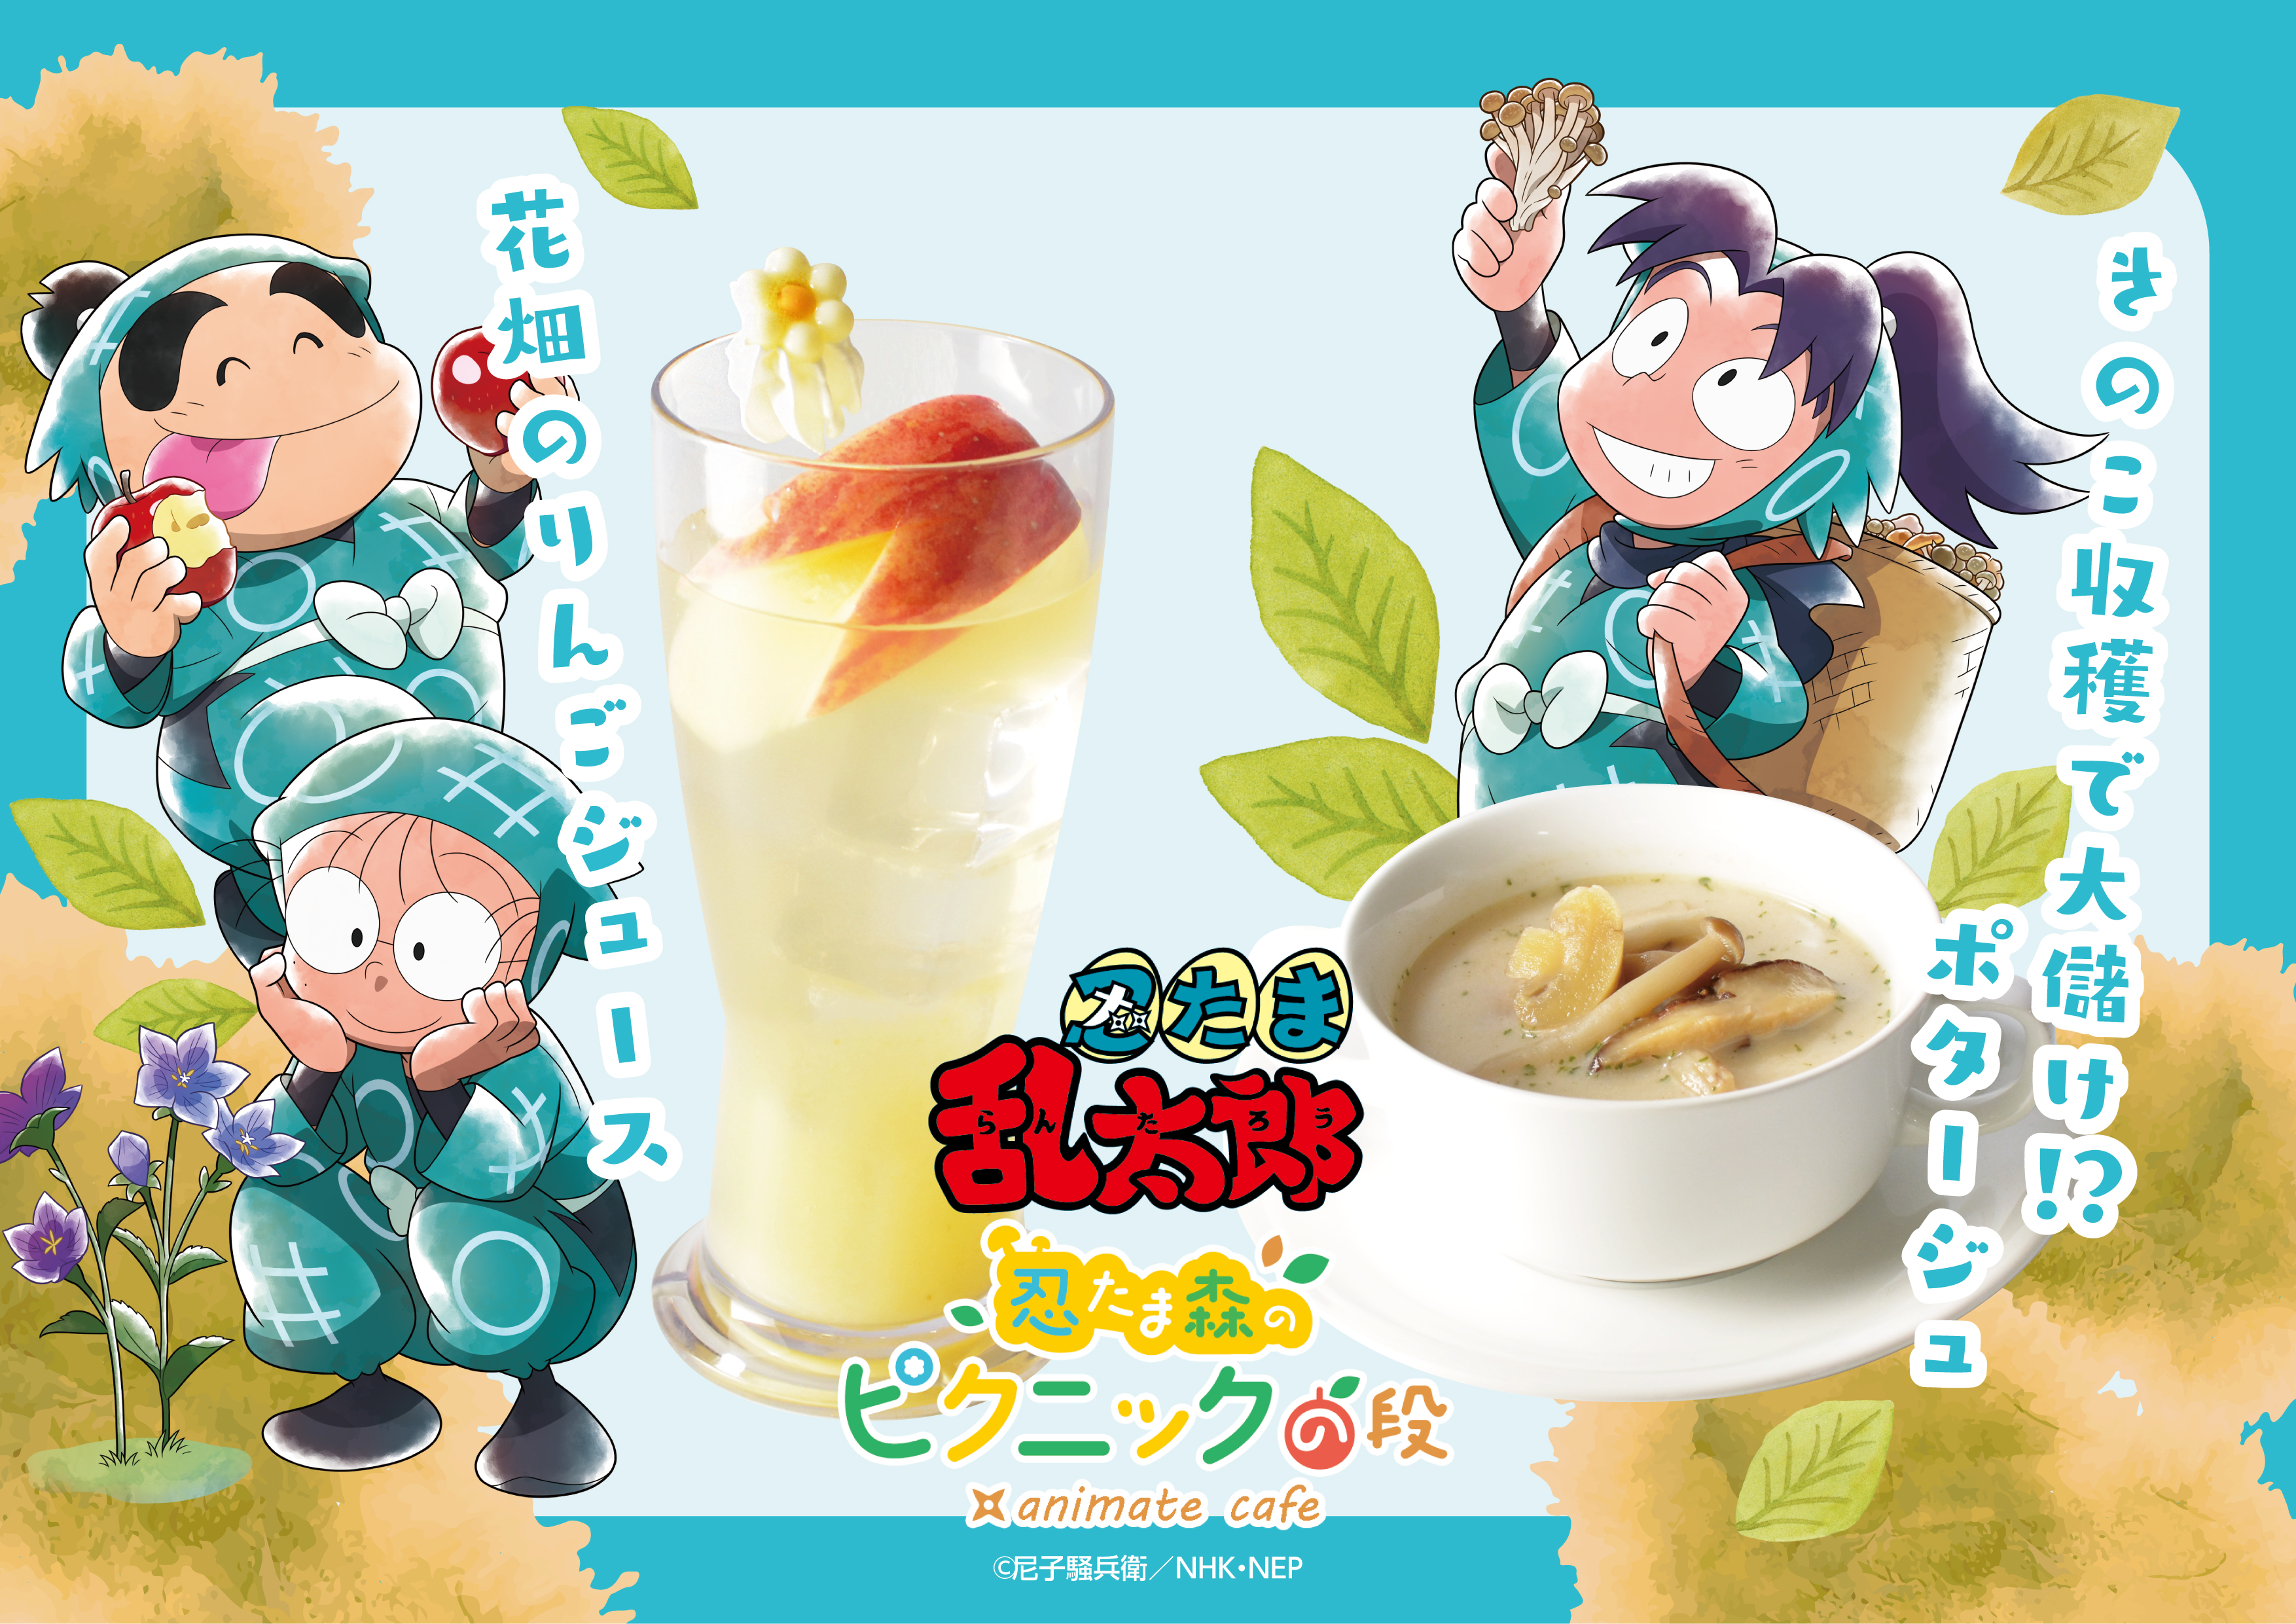 アニメイトカフェの中の人 Animatecafeinfo Twitter